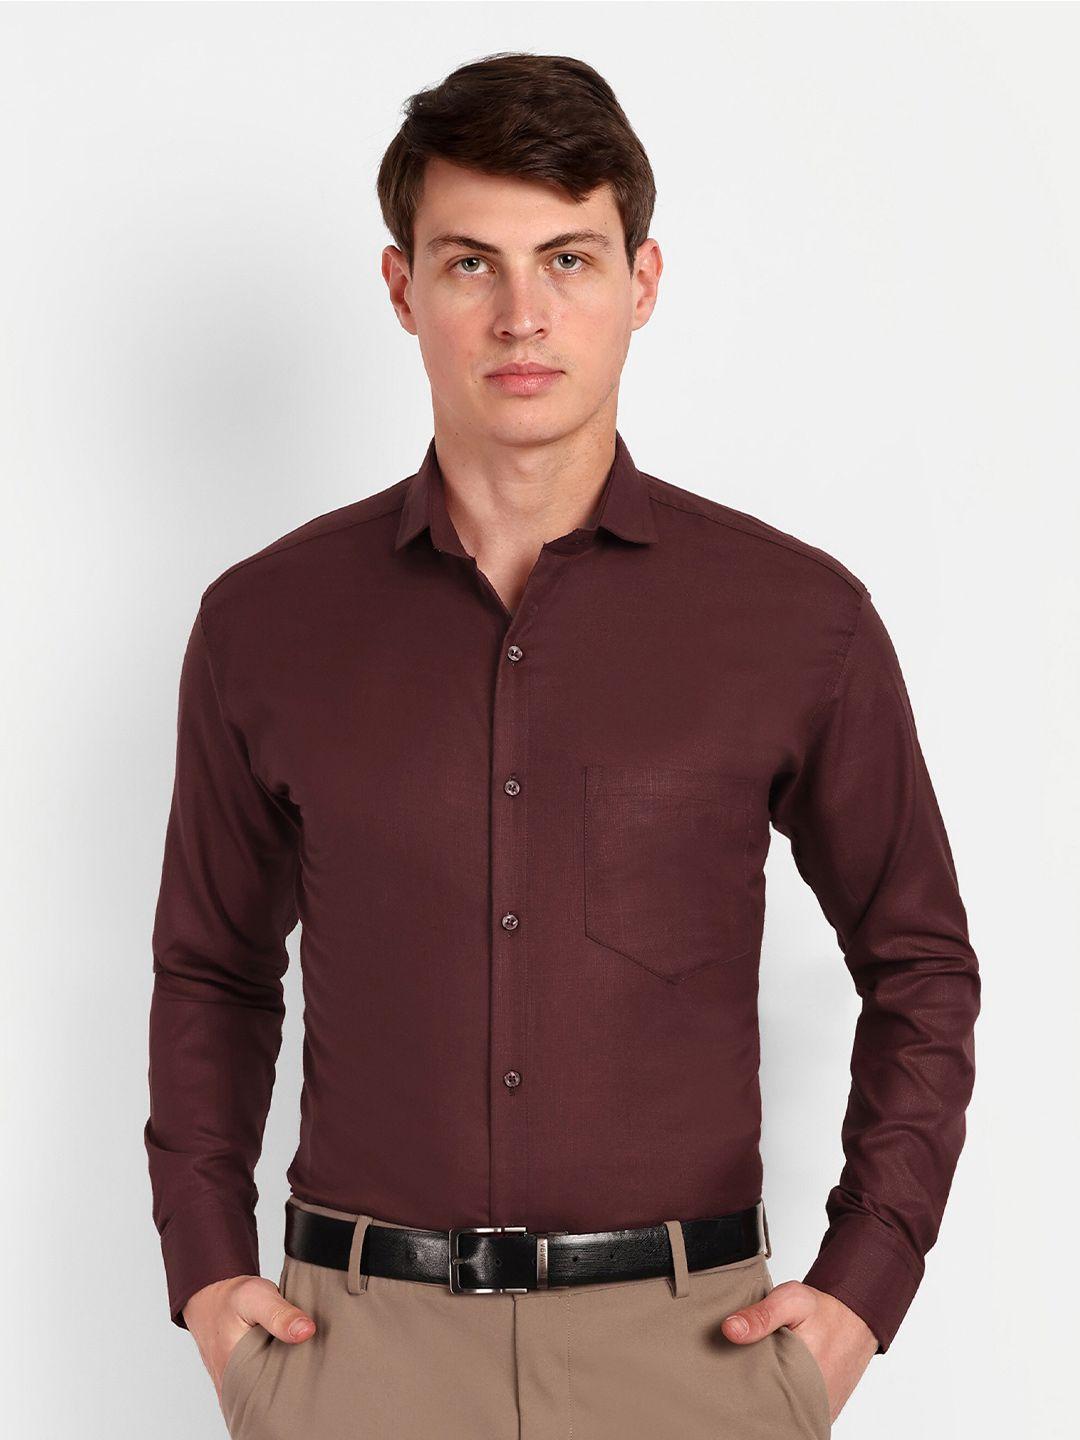 colorwings-men-maroon-comfort-semi-sheer-formal-shirt